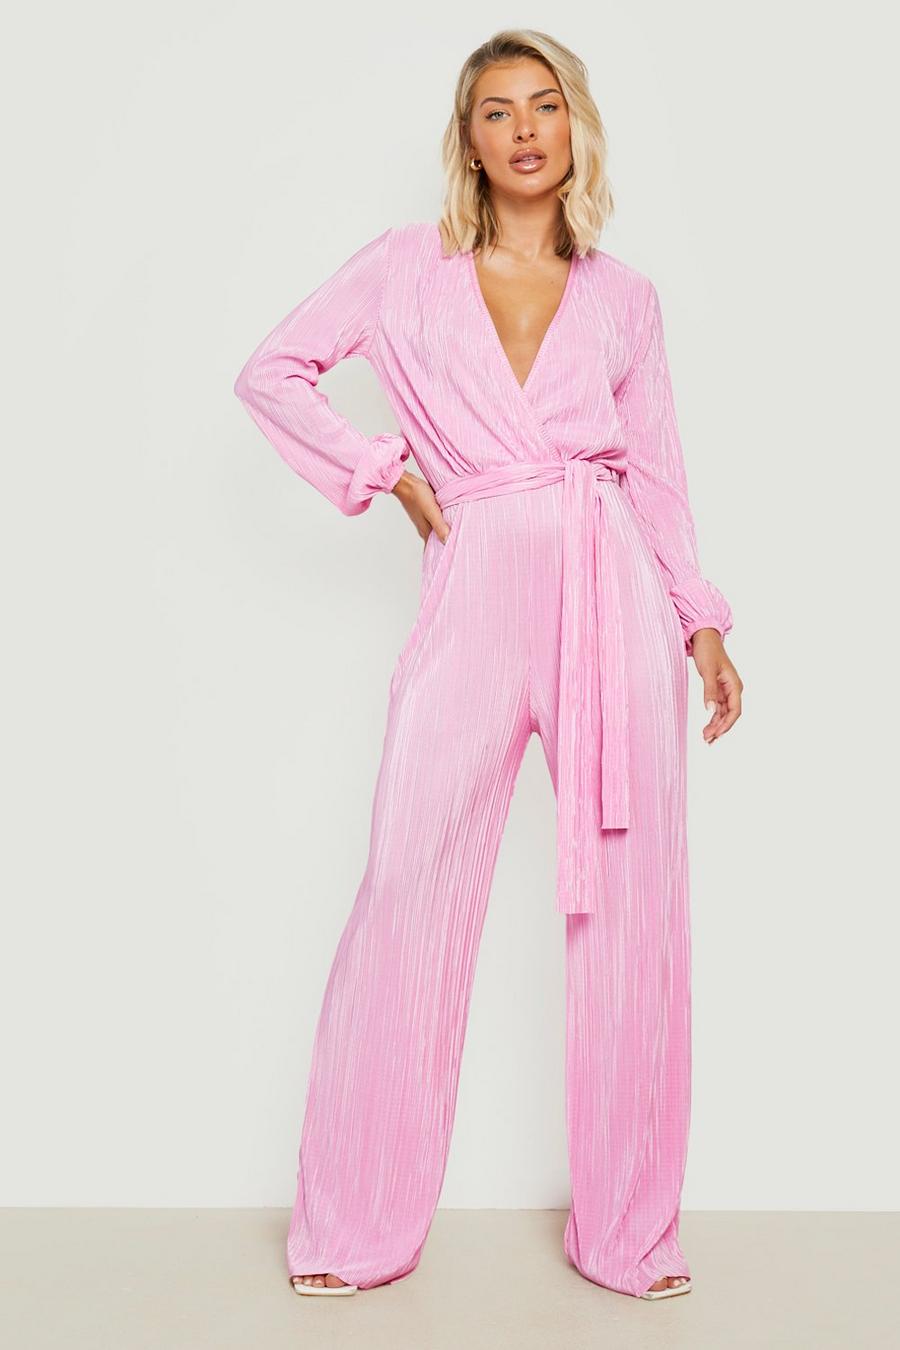 Candy pink Plisse Plunge Wrap Jumpsuit